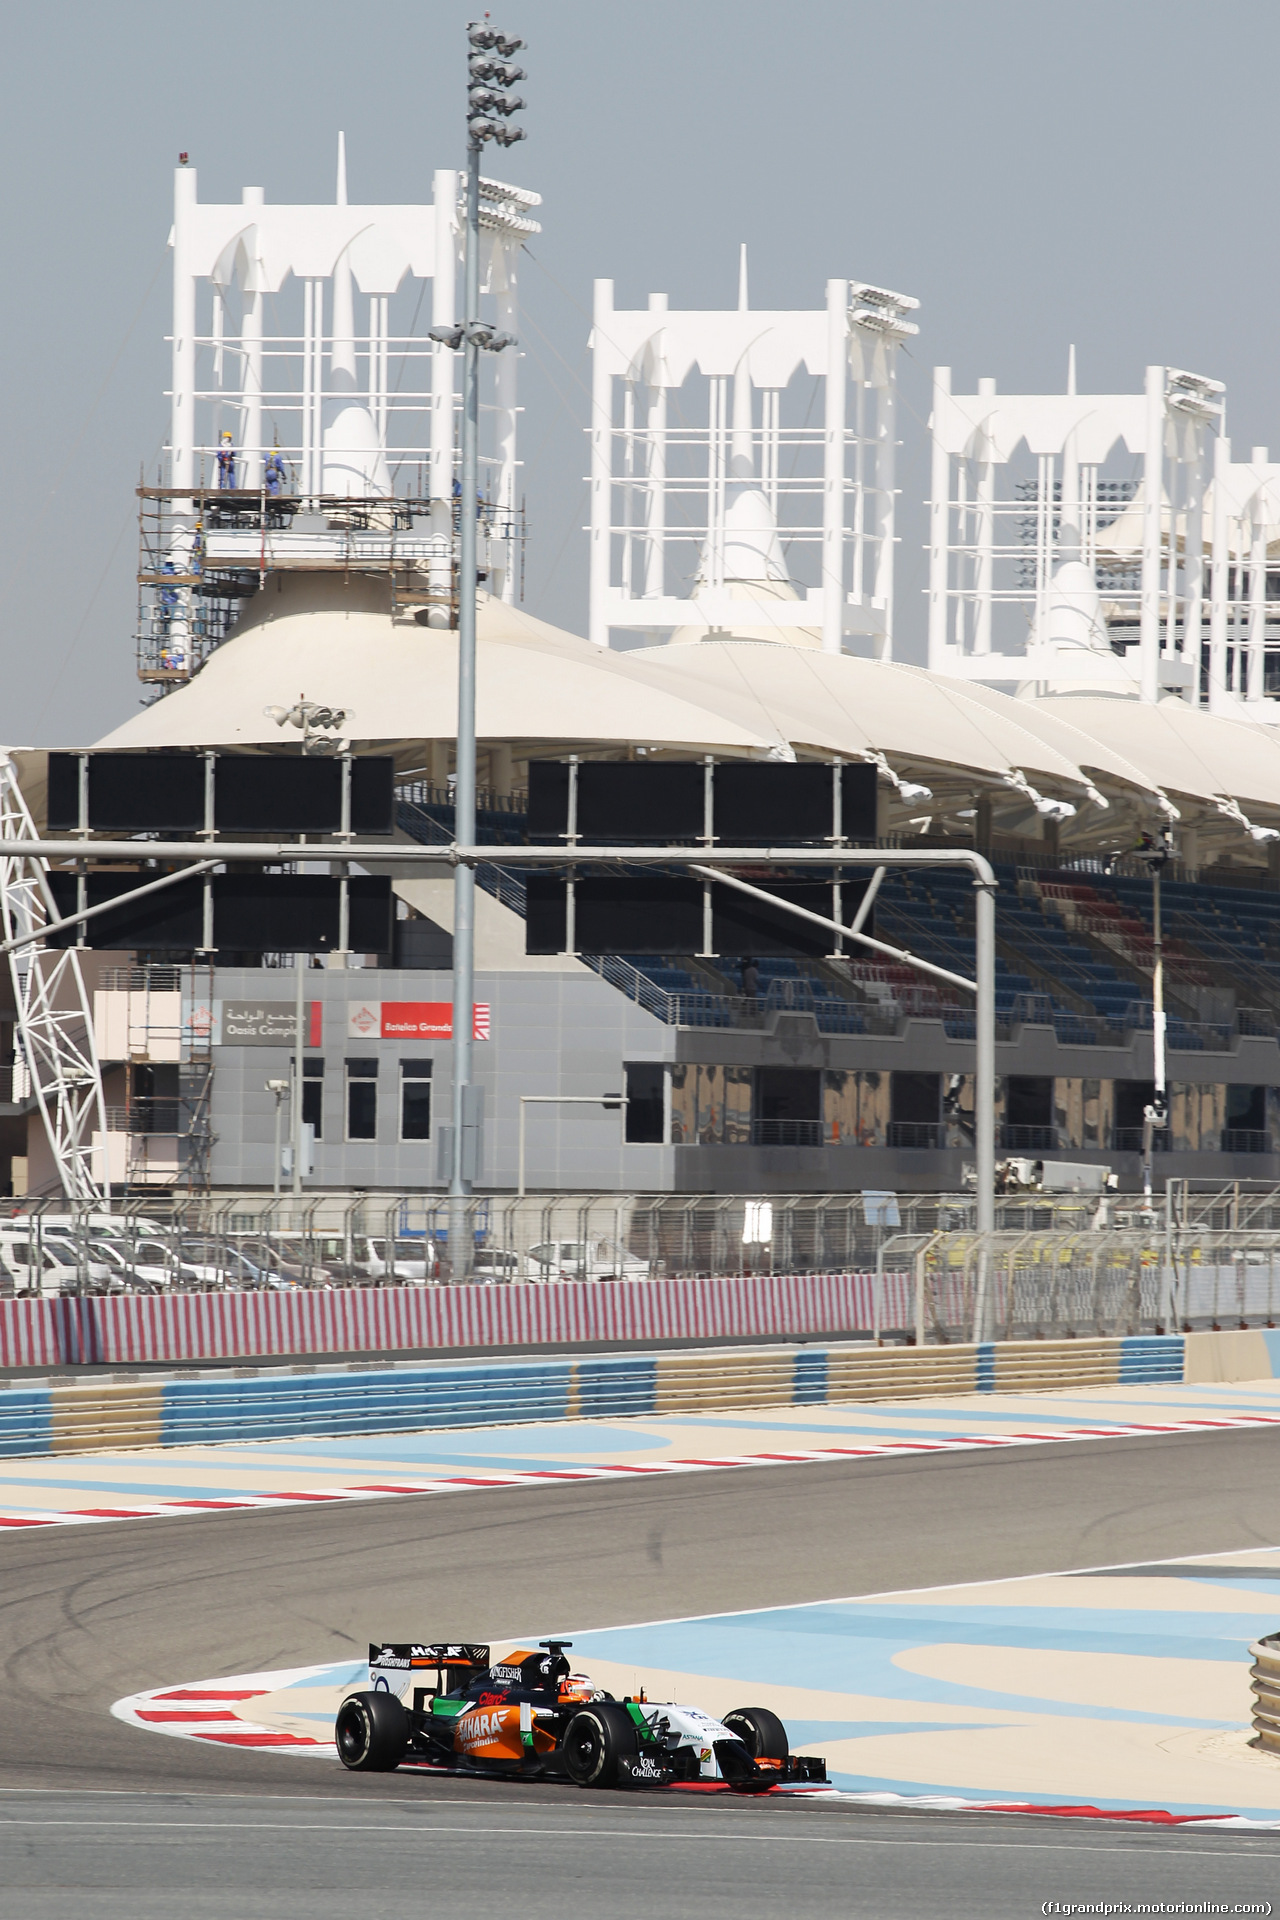 TEST F1 BAHRAIN 20 FEBBRAIO, Nico Hulkenberg (GER) Sahara Force India F1 VJM07.
20.02.2014. Formula One Testing, Bahrain Test One, Day Two, Sakhir, Bahrain.